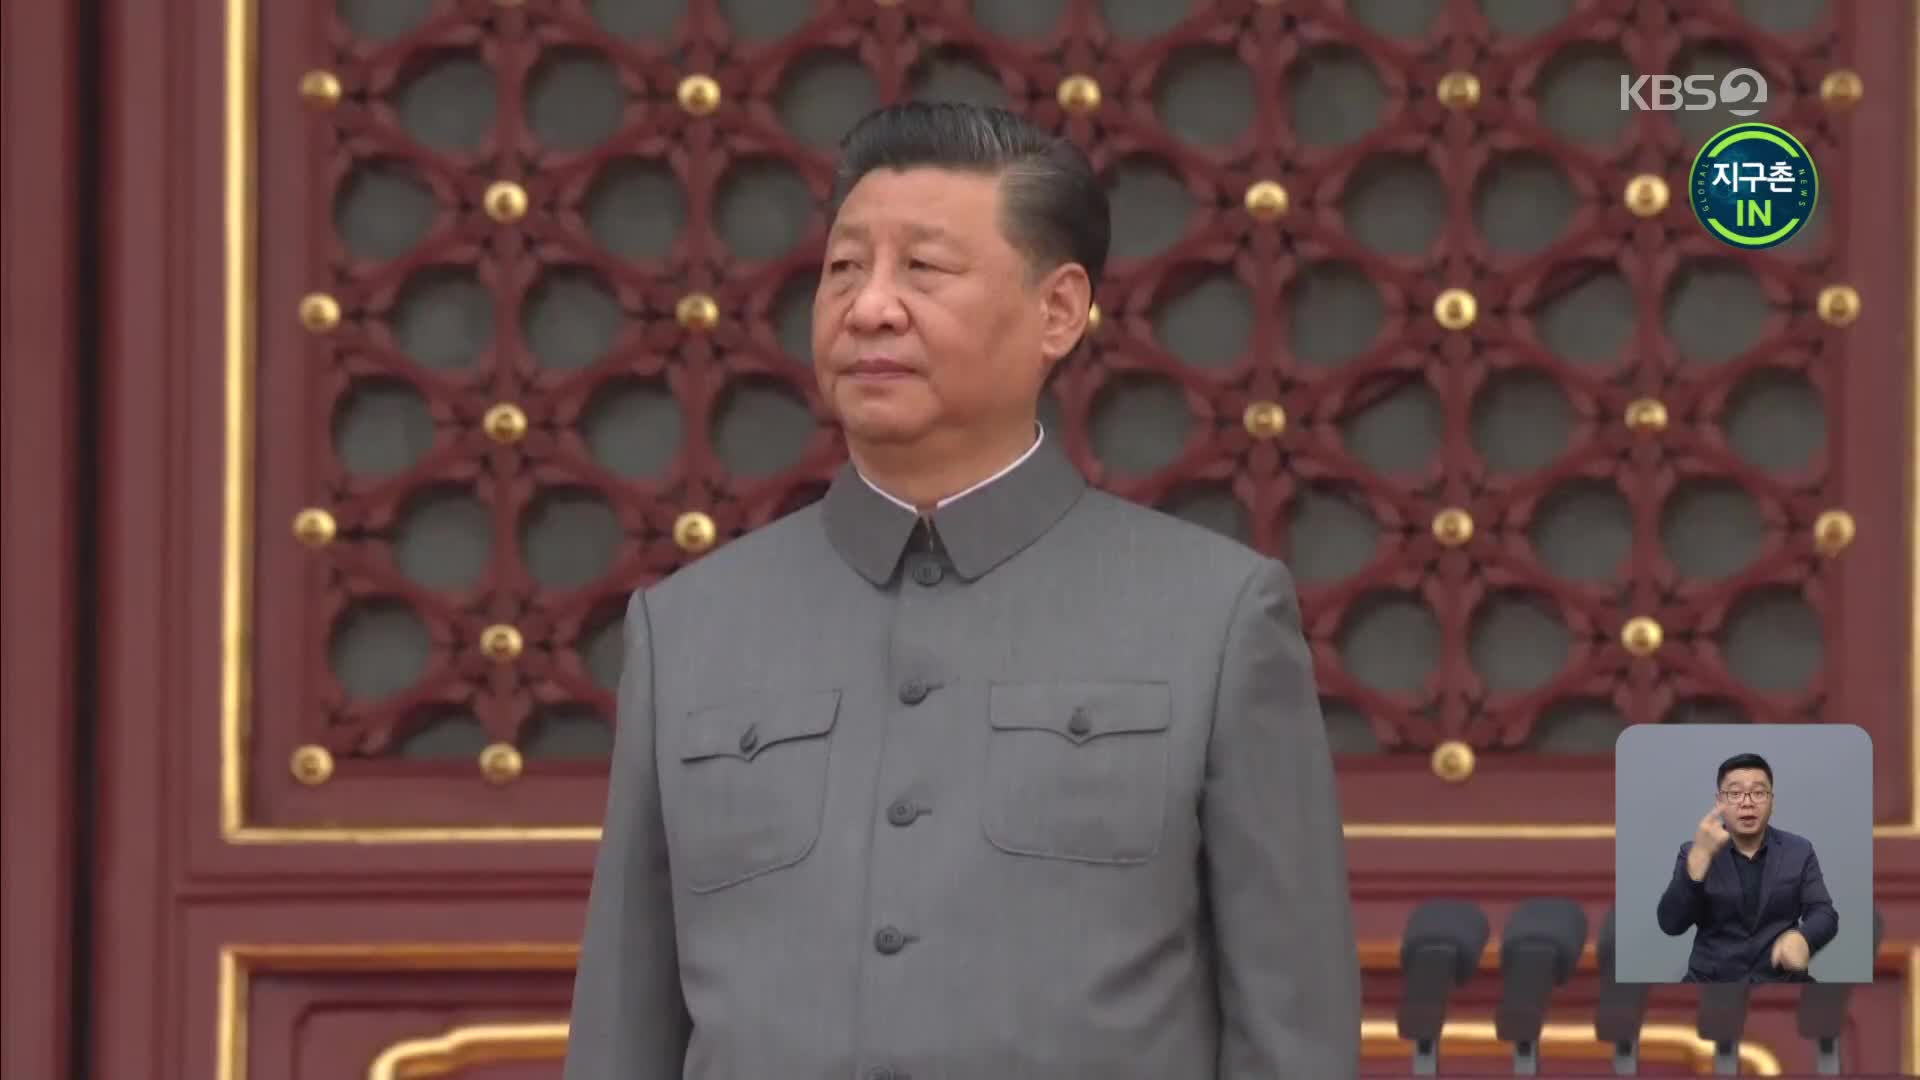 [지구촌 IN] 시진핑의 큰 그림? 연일 규제 쏟아지는 중국